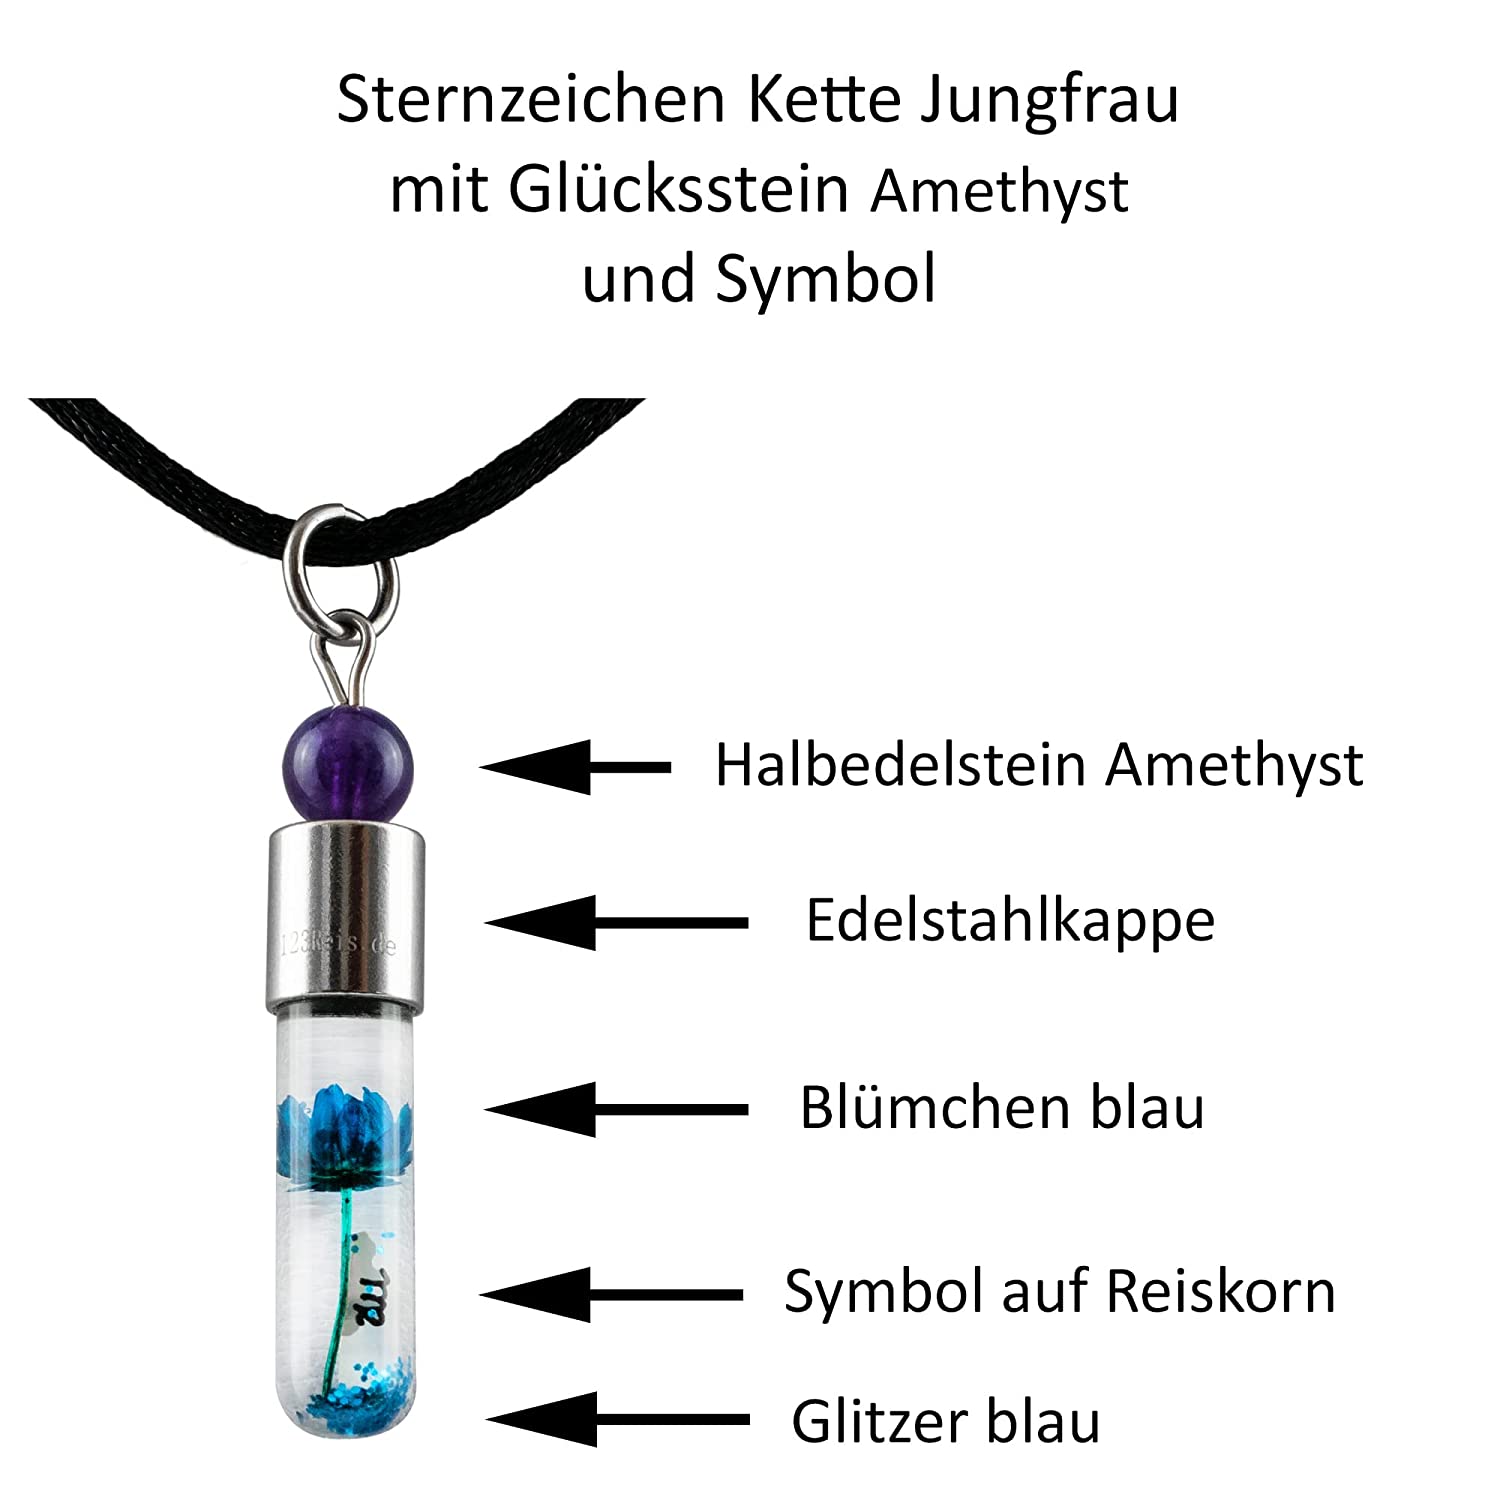 Sternzeichen Jungfrau, 24. August - 23. September, Halskette mit Glückstein Amethyst und Sternzeichensymbol